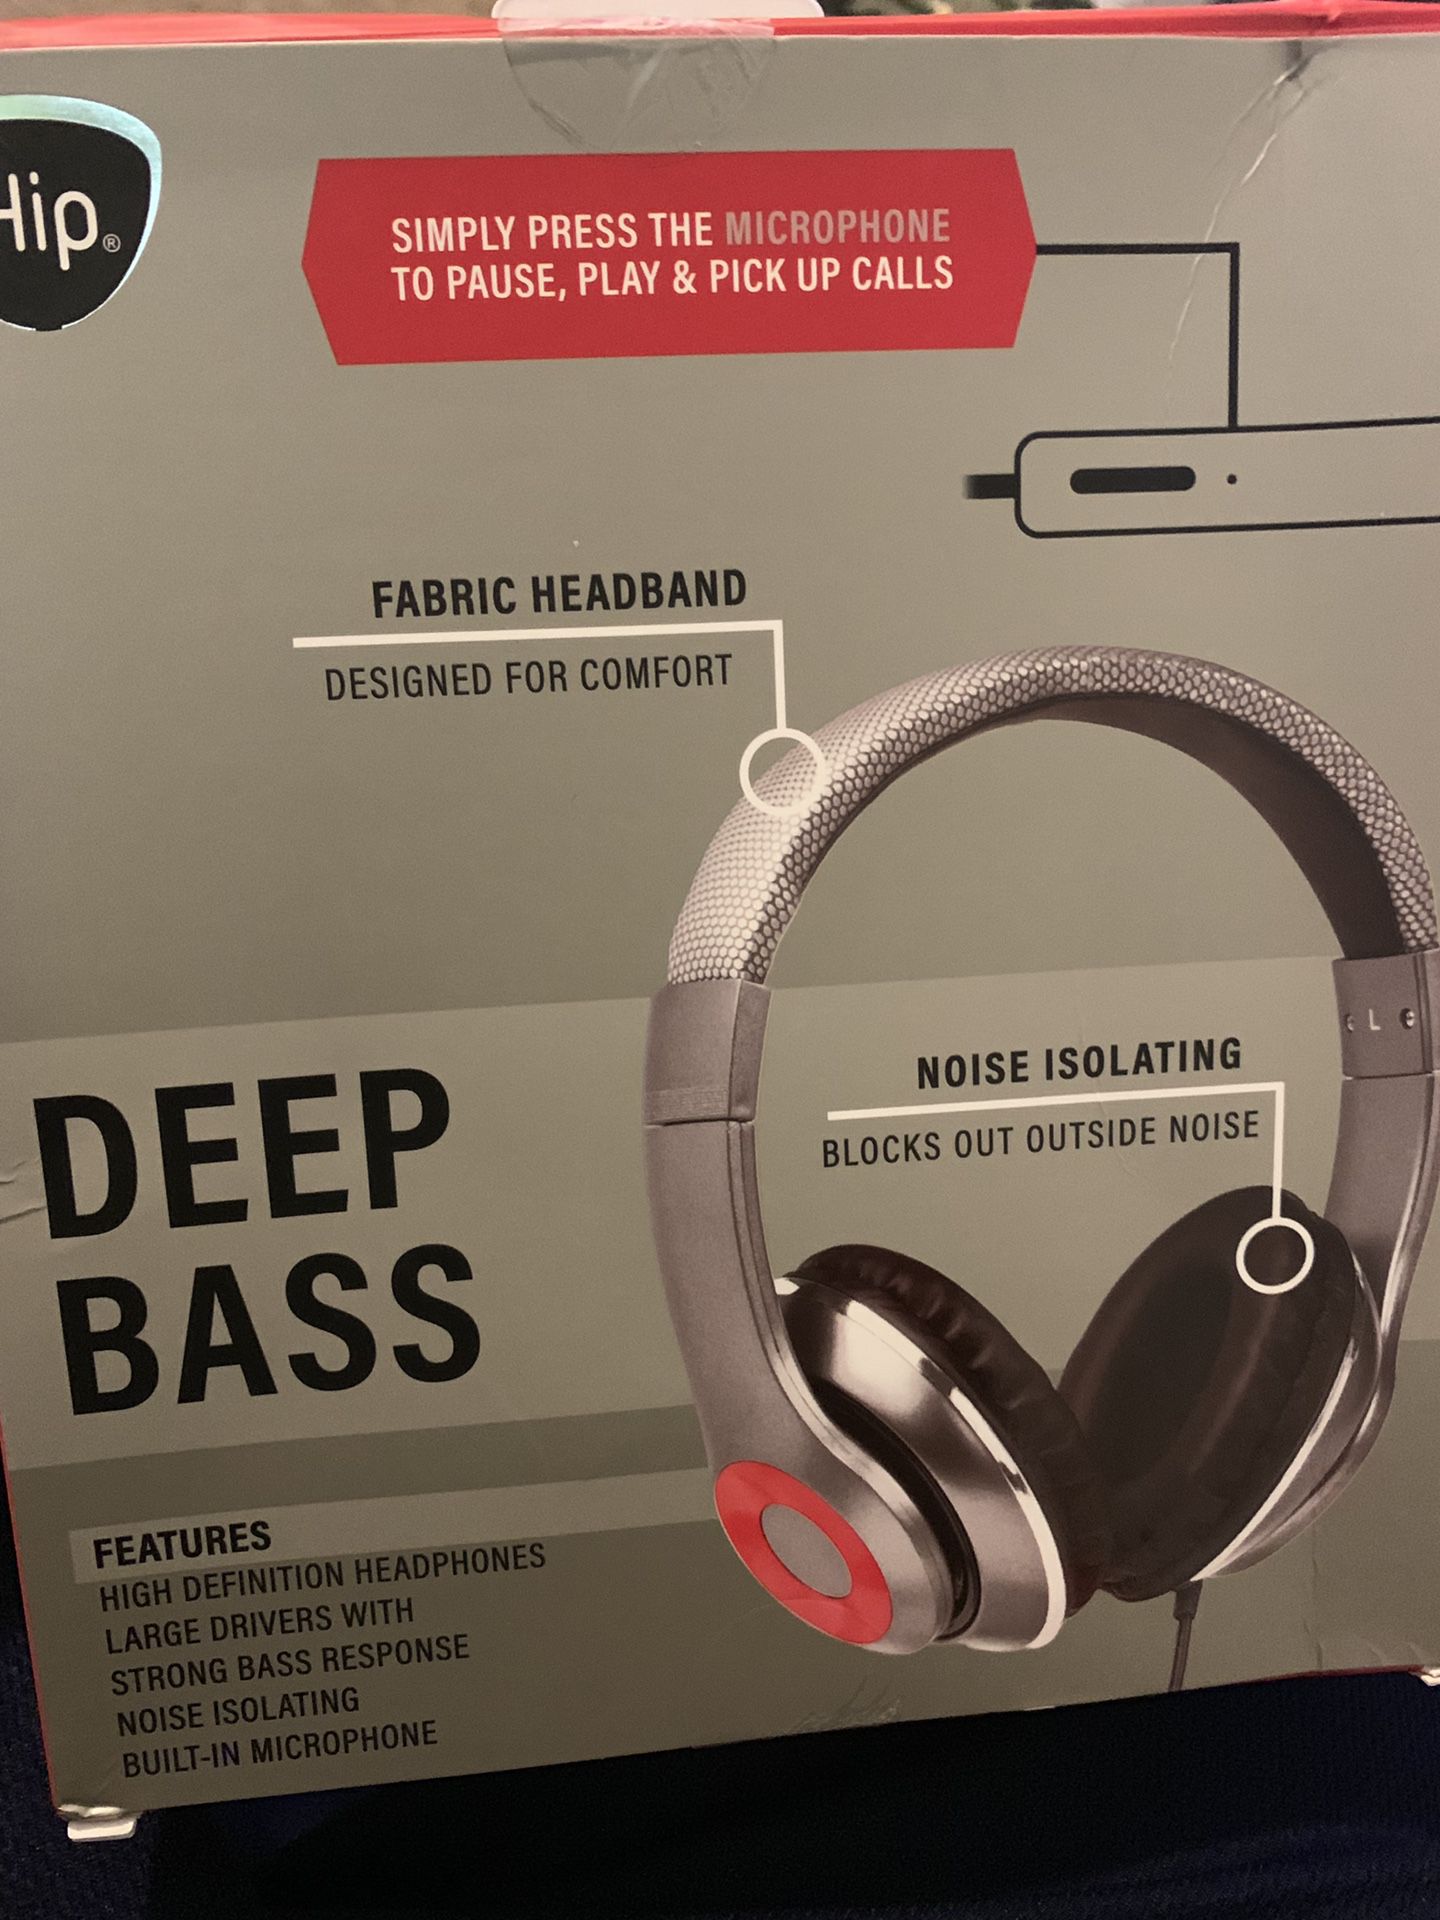 Deep bass headphones